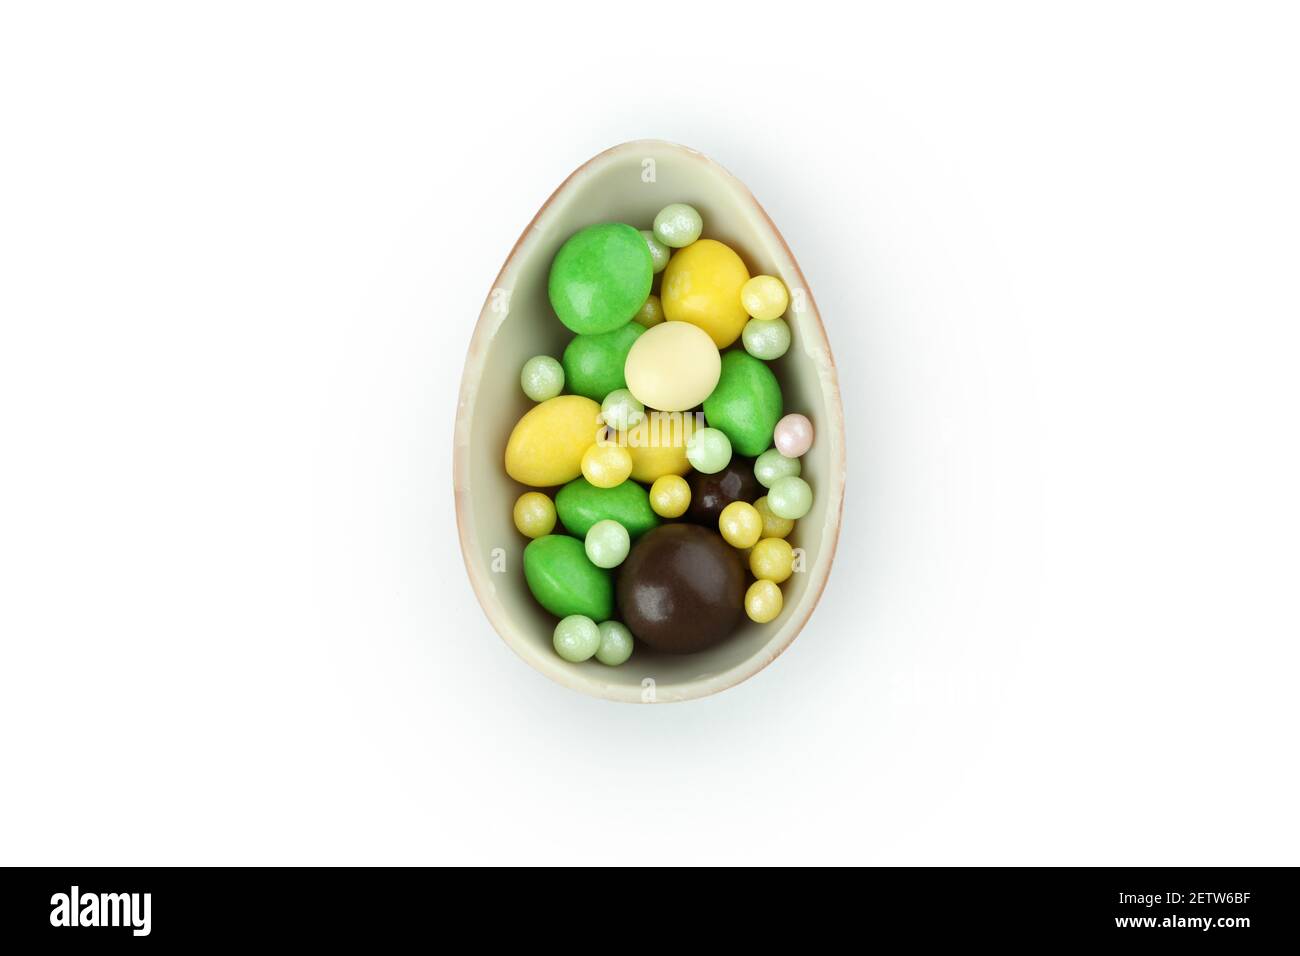 Mitad de huevo de chocolate con caramelos aislados sobre fondo blanco Foto de stock